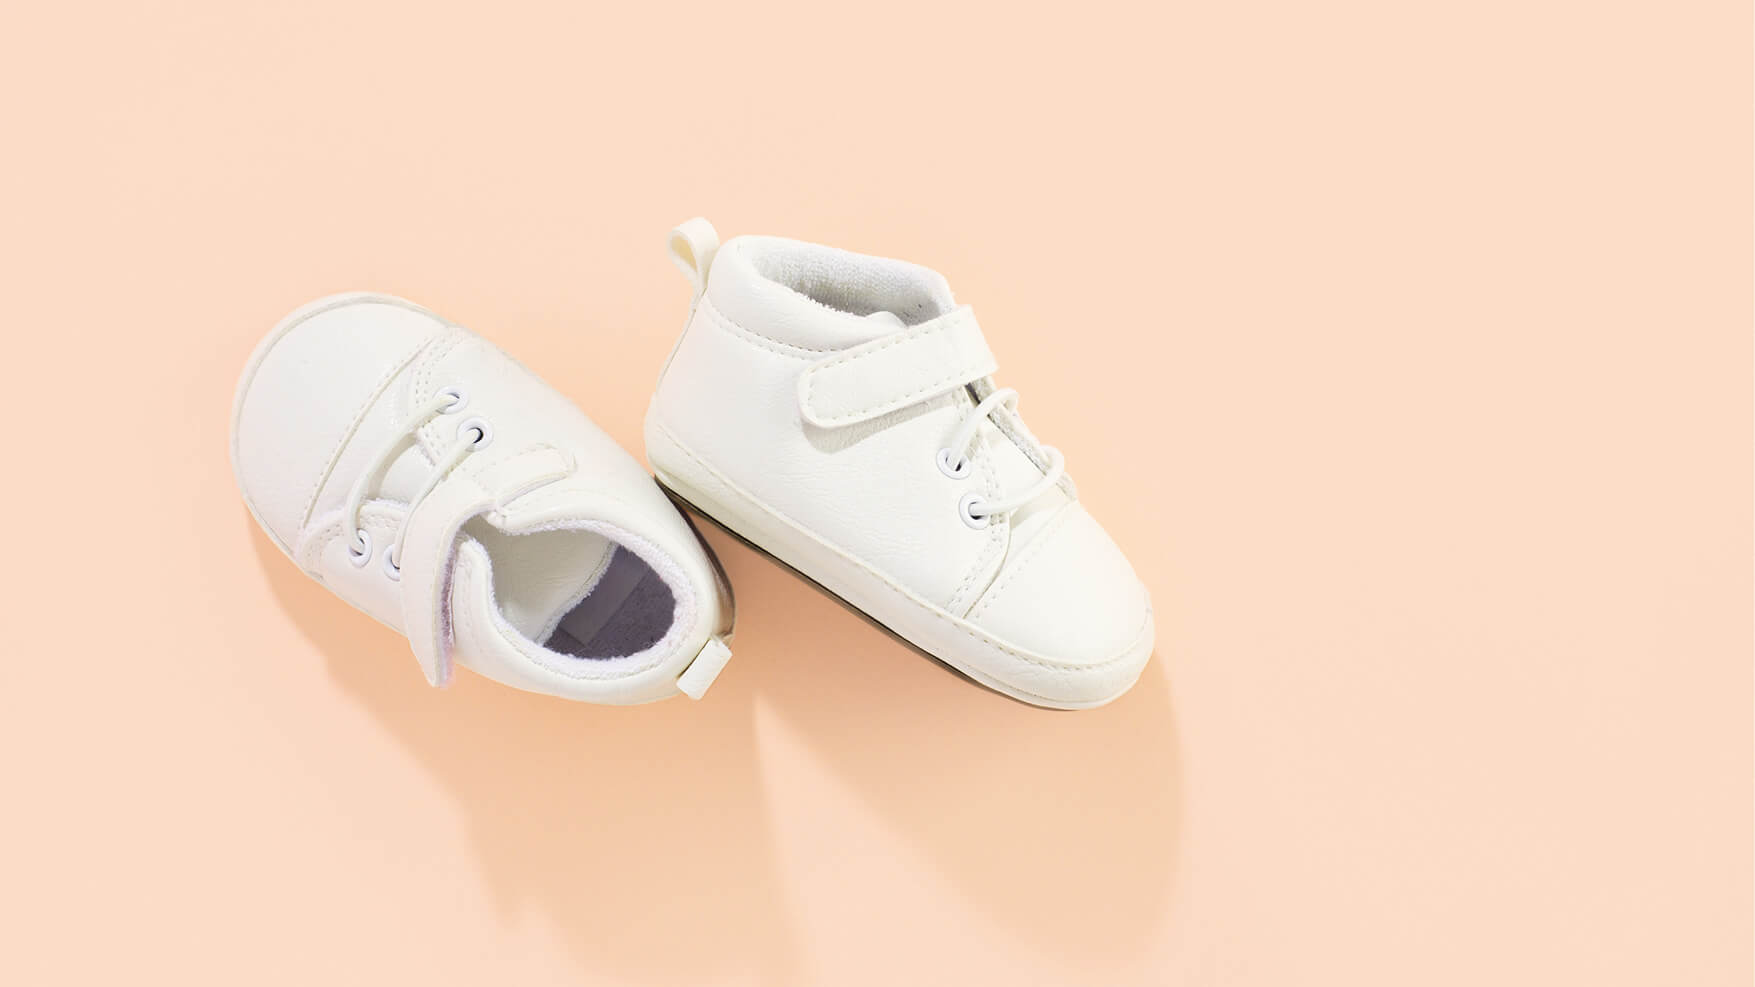 Dječje cipelice. cipelice za novorođenče